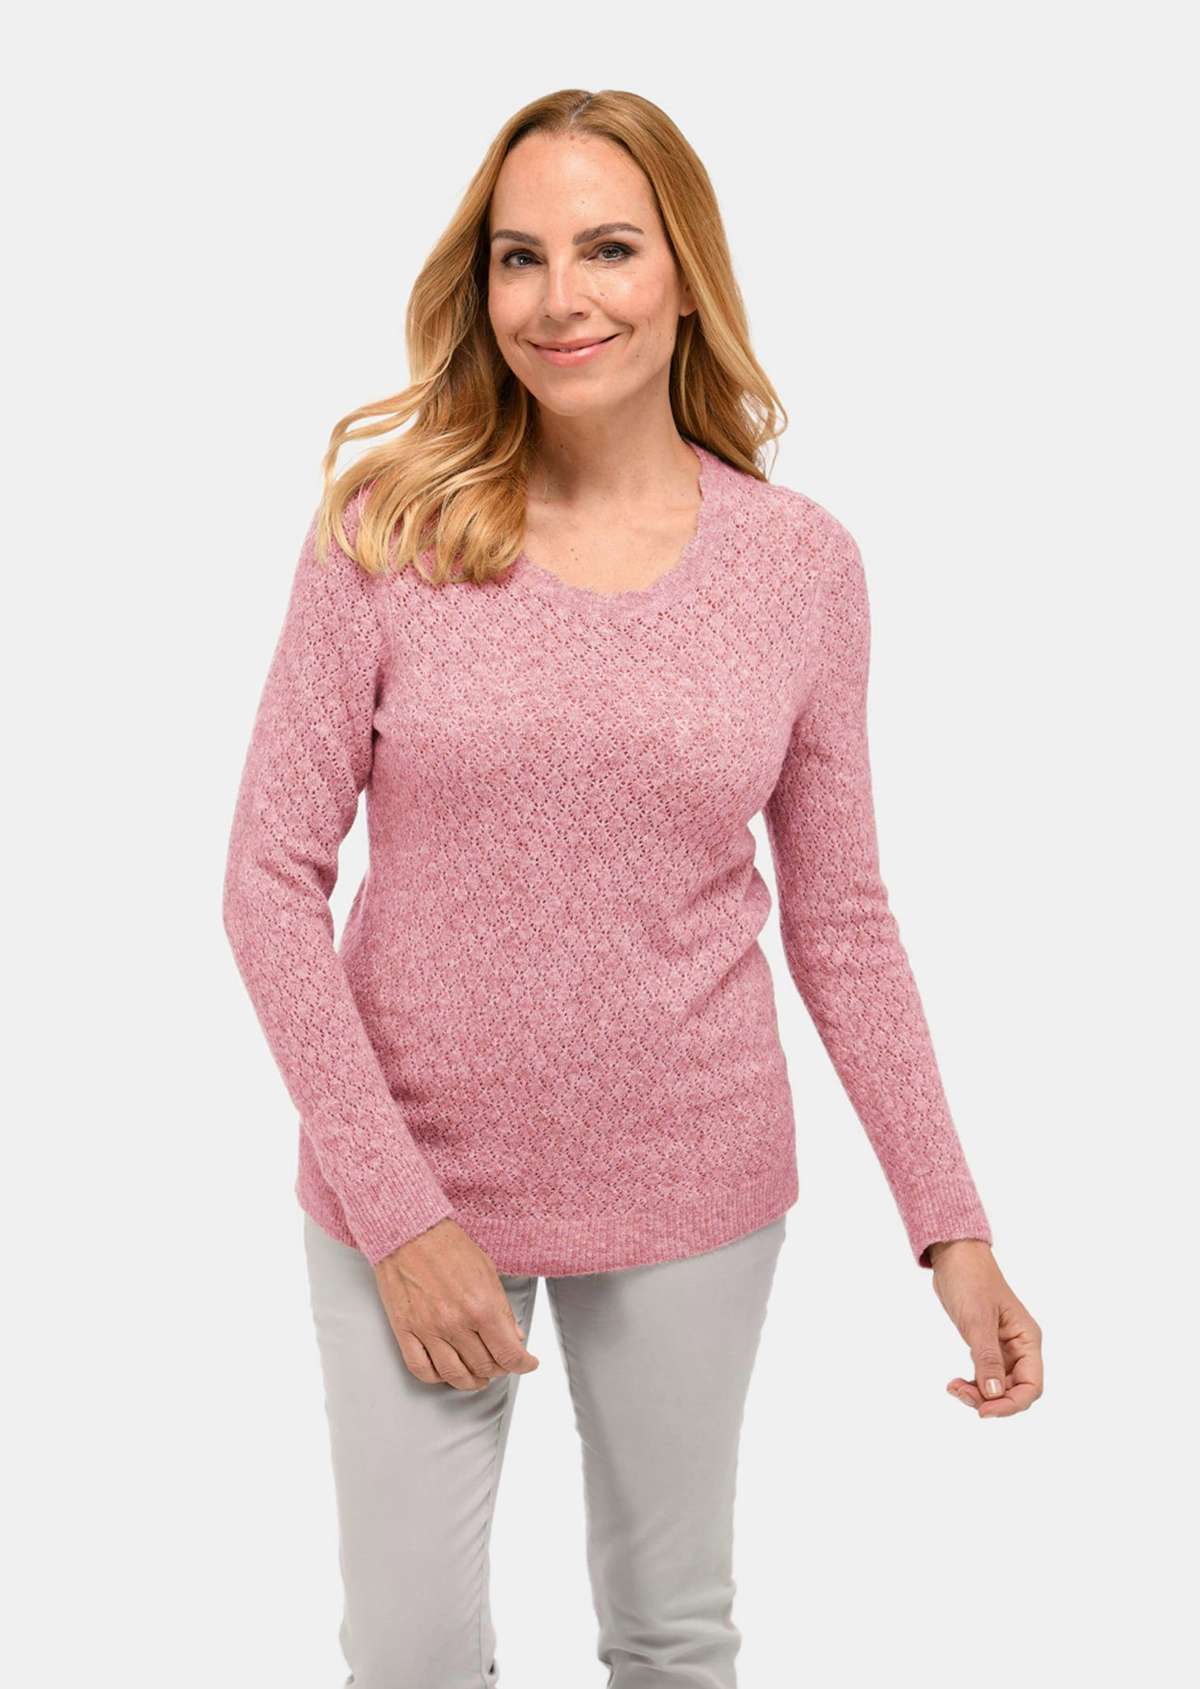 Женственный ажурный свитер из качественной меланжевой пряжи.